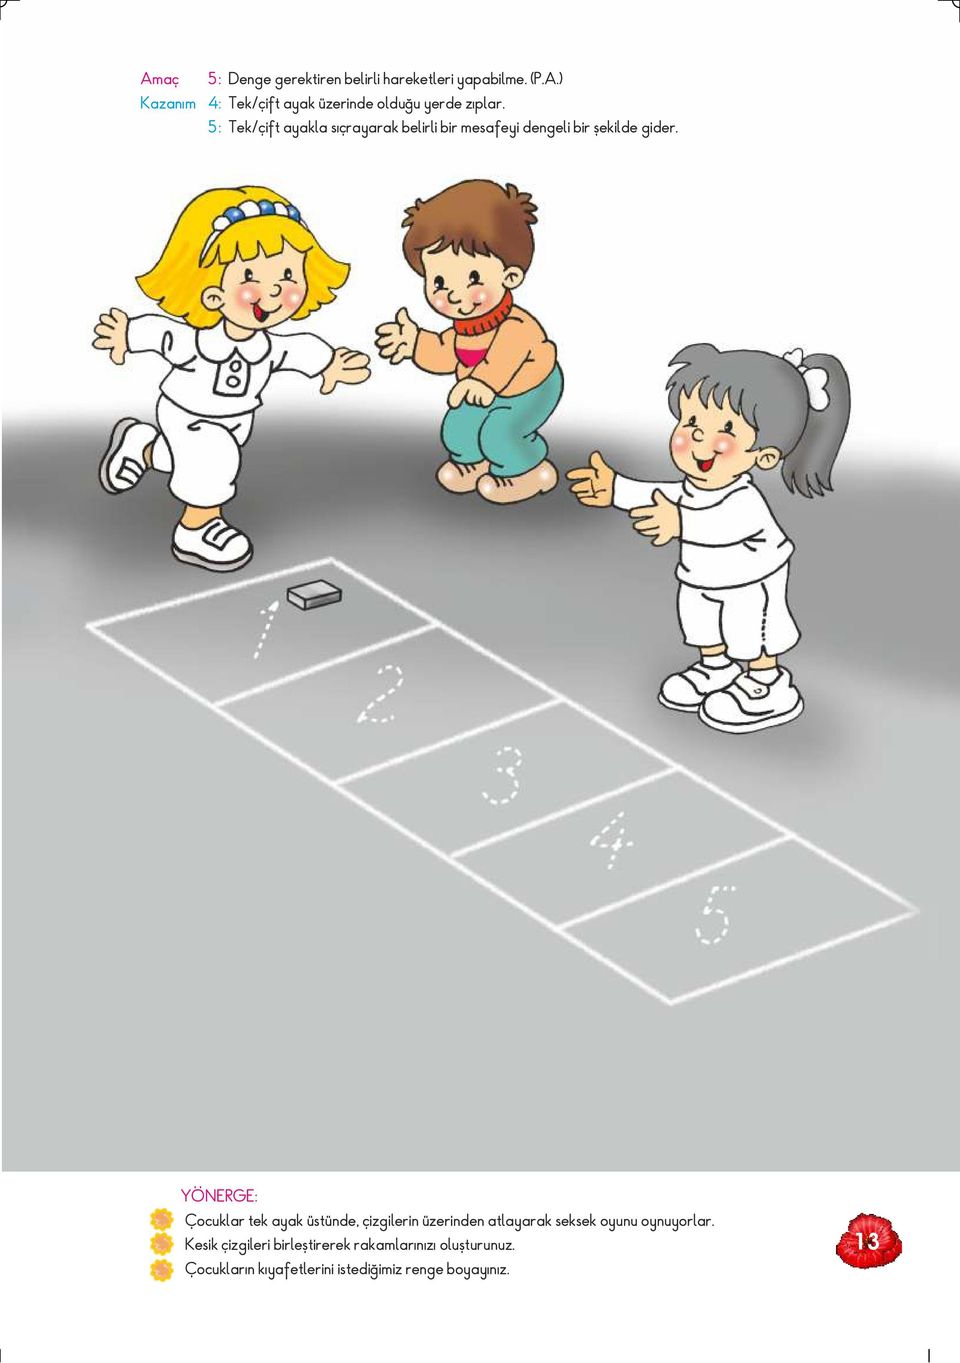 Çocuklar tek ayak üstünde, çizgilerin üzerinden atlayarak seksek oyunu oynuyorlar.